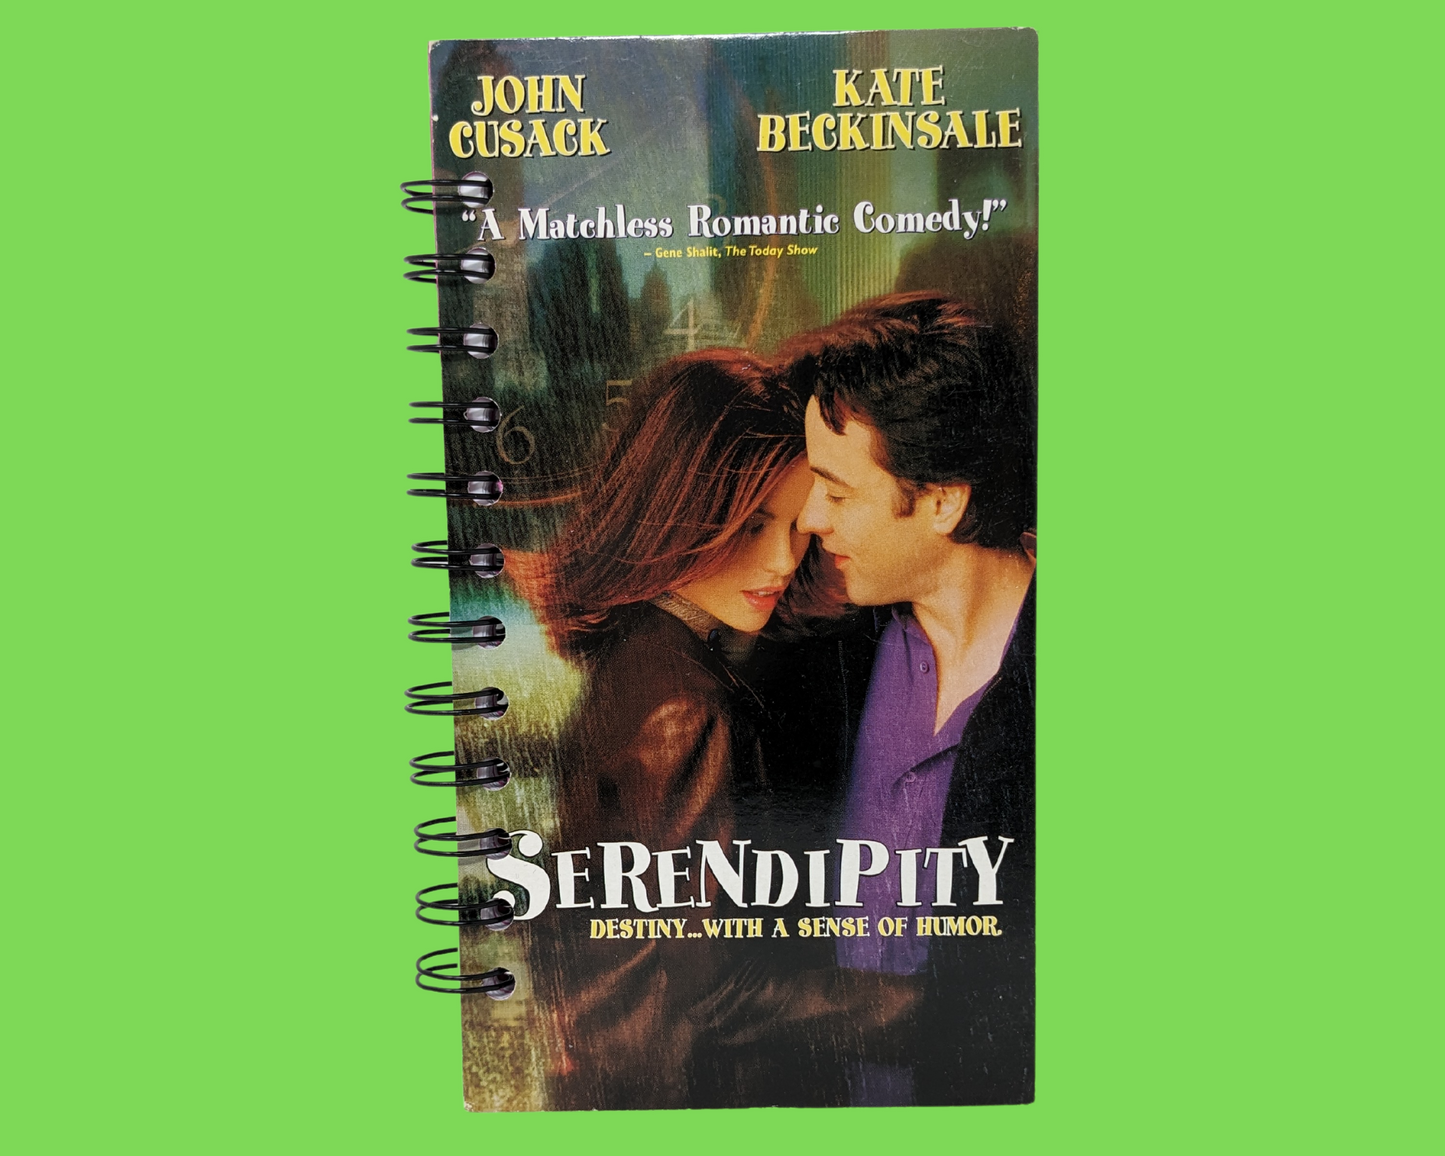 Carnet de film VHS Serendipity